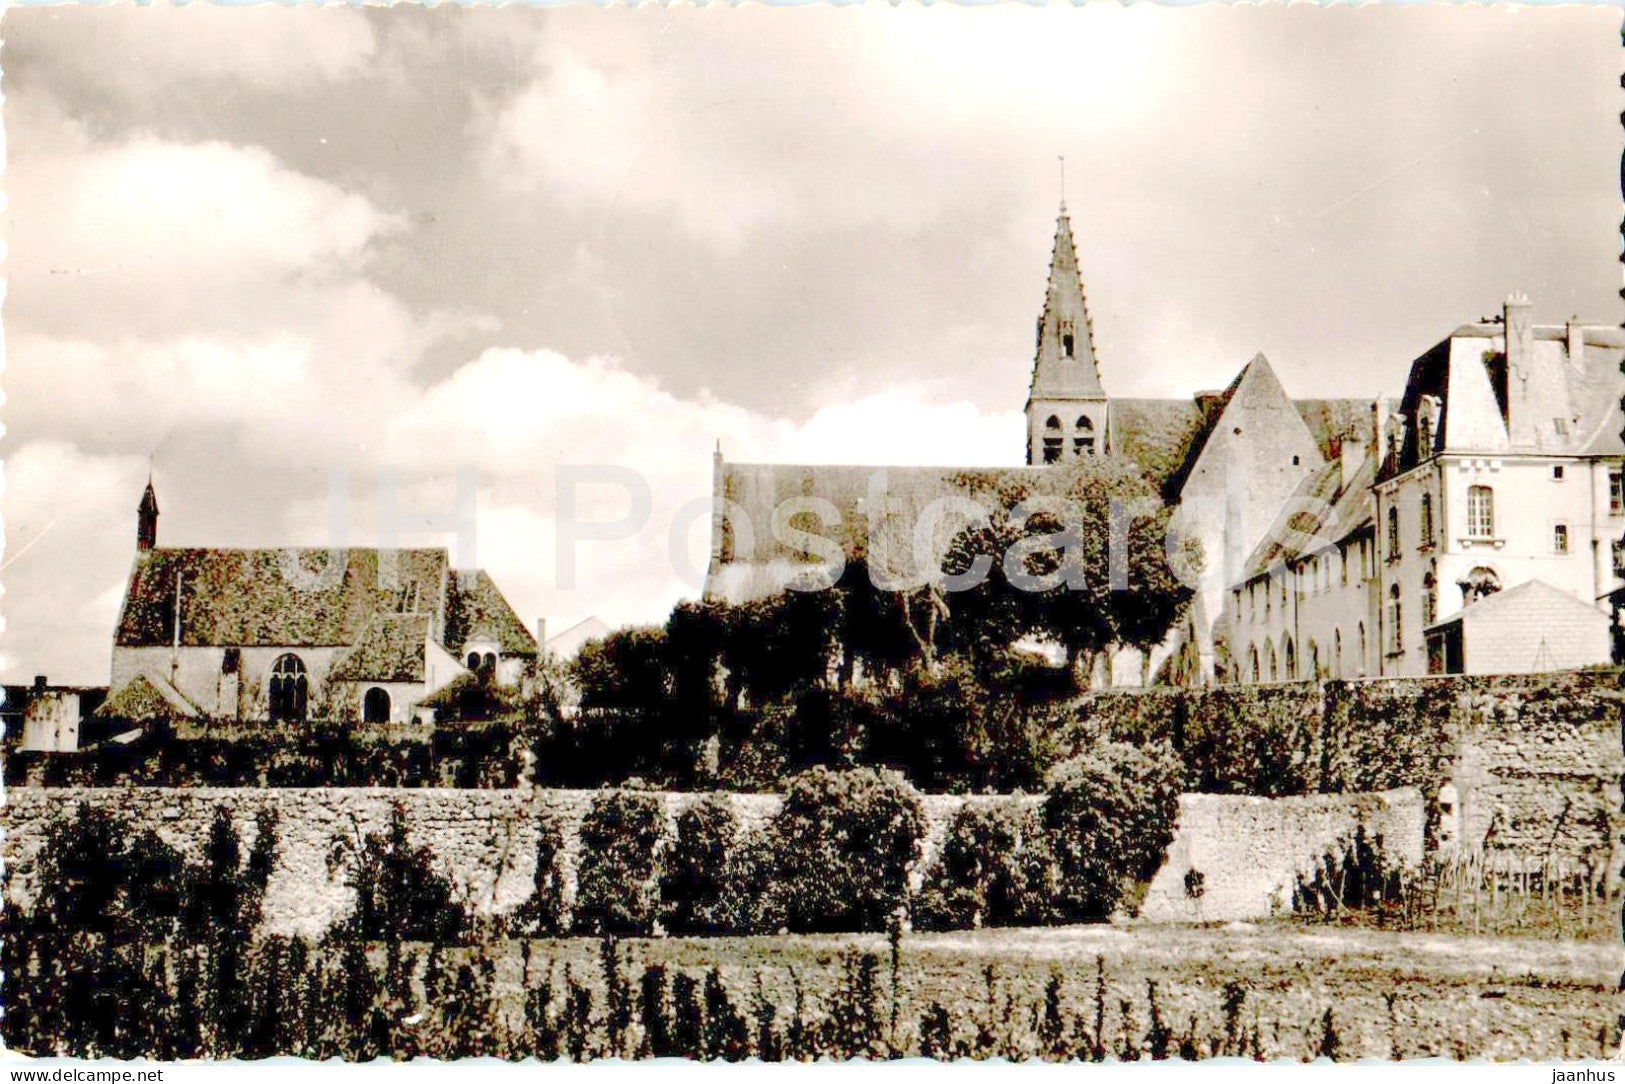 Ferrieres - Vue d'ensemble de l'Abbaye et des Arenes ou Pepin le Bref - old postcard - 1954 - France - used - JH Postcards